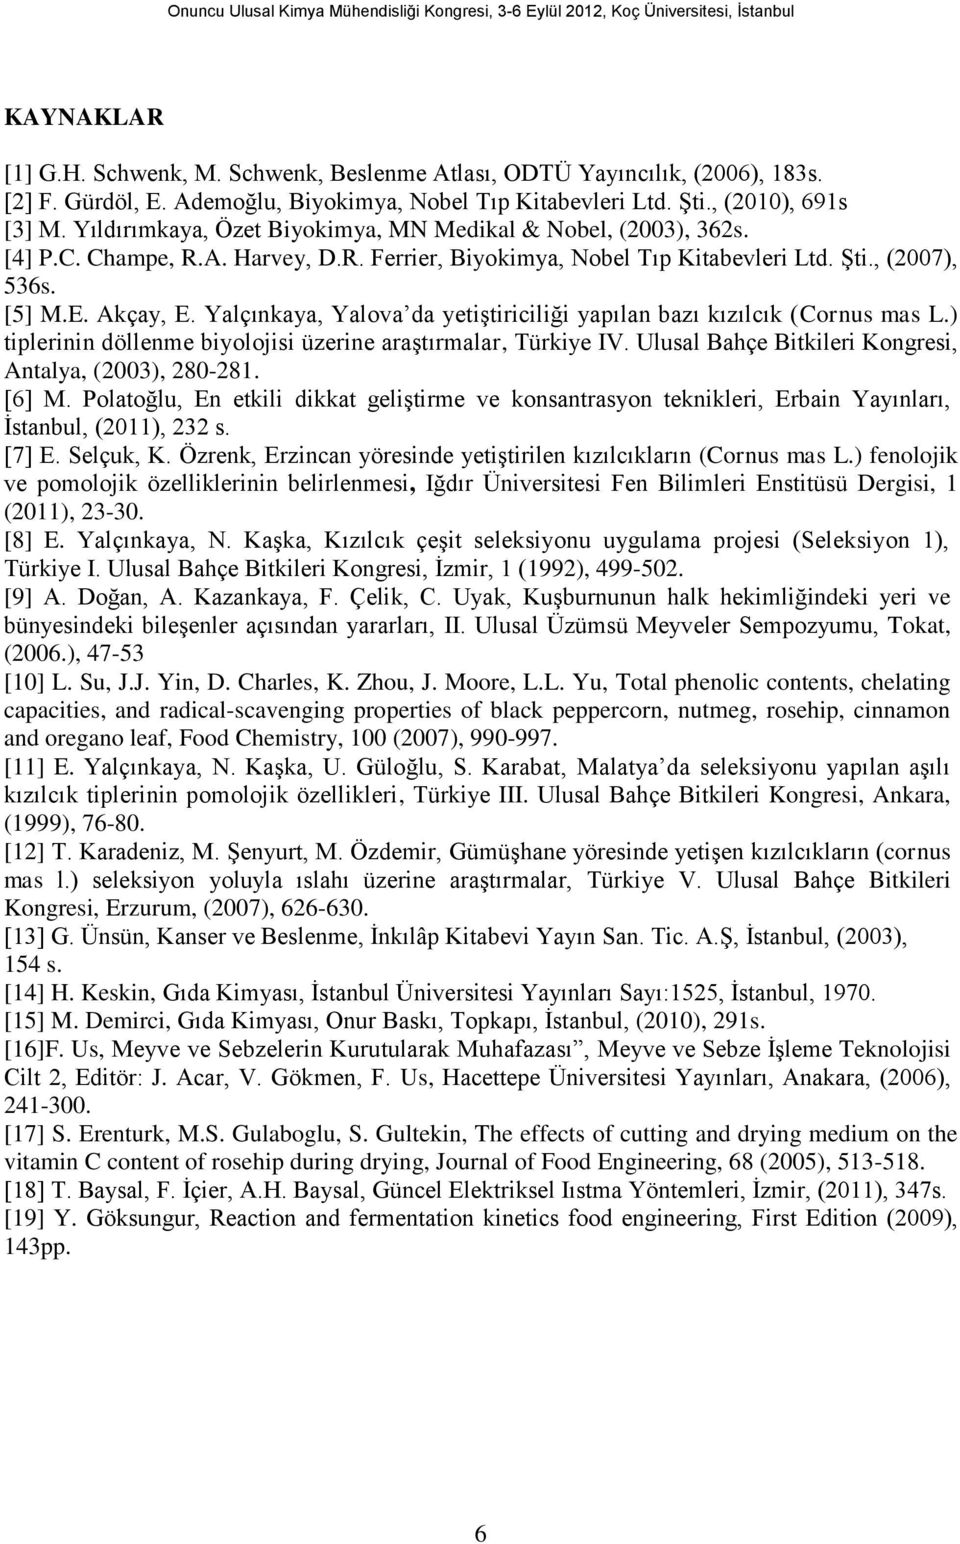 Yalçınkaya, Yalova da yetiştiriciliği yapılan bazı kızılcık (Cornus mas L.) tiplerinin döllenme biyolojisi üzerine araştırmalar, Türkiye IV. Ulusal Bahçe Bitkileri Kongresi, Antalya, (2003), 280-281.